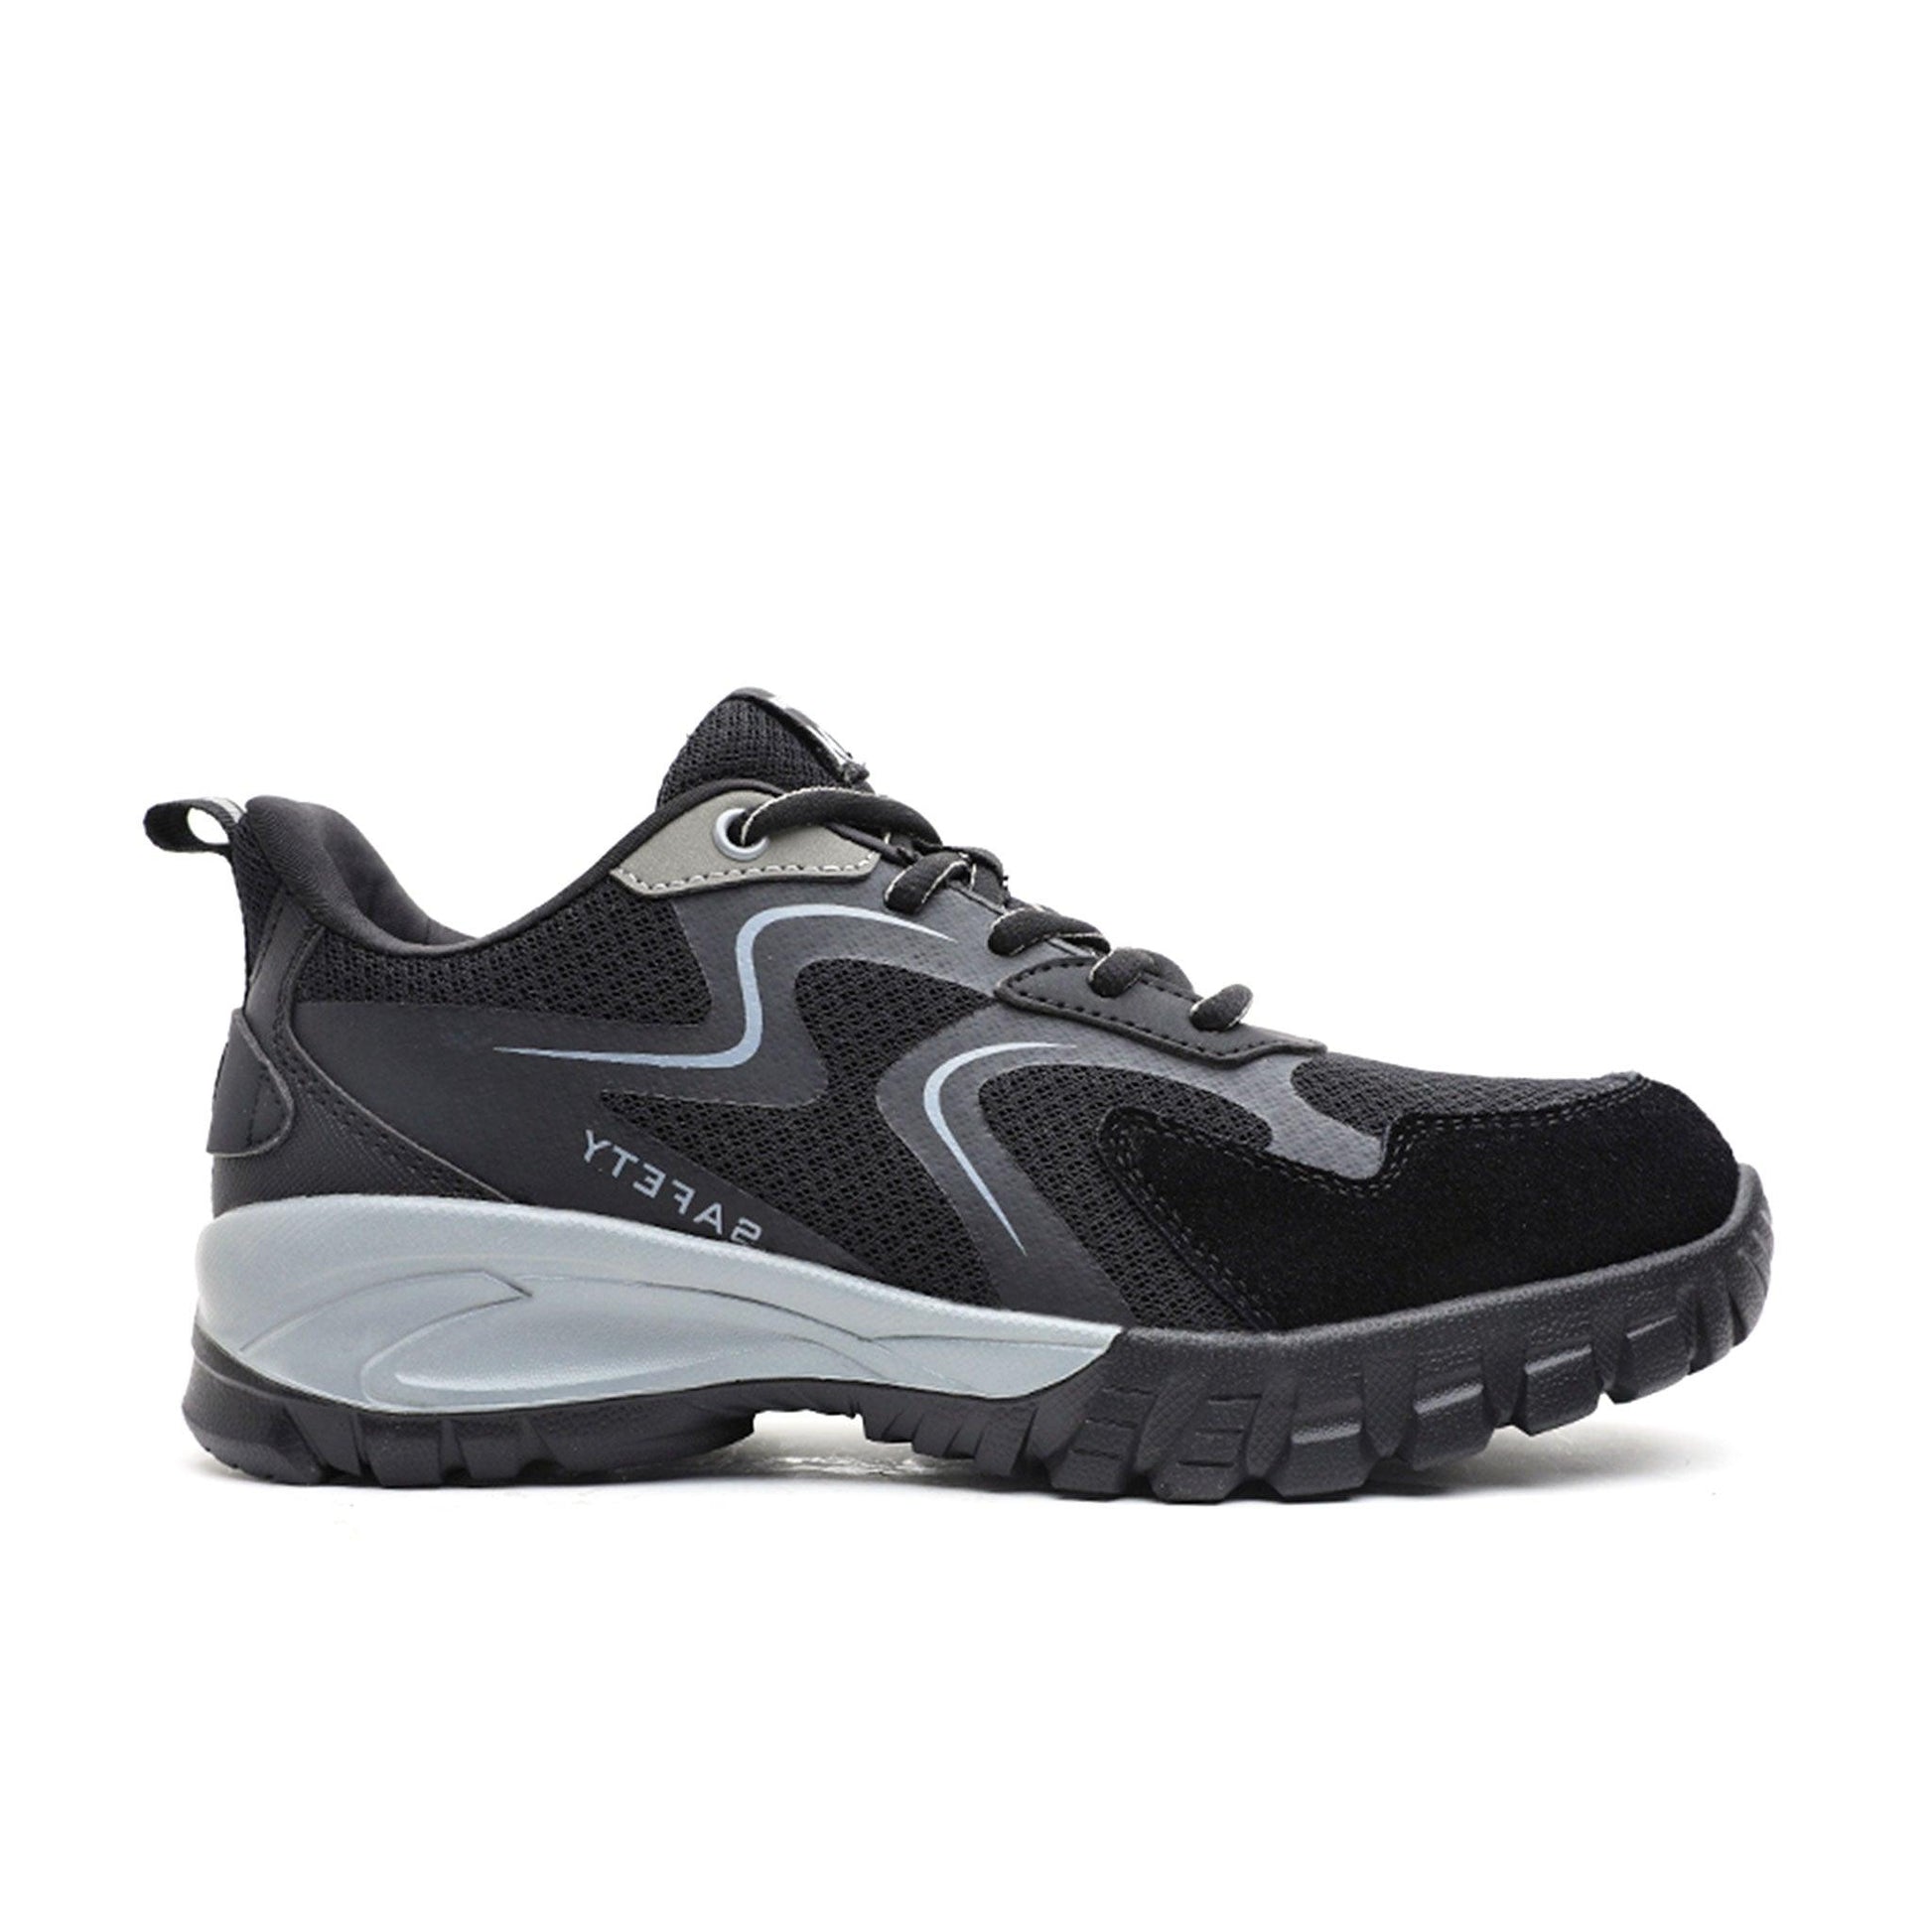 Men's Steel Toe Shoes - Shock-Absorbing | B139 - USINE PRO Footwear